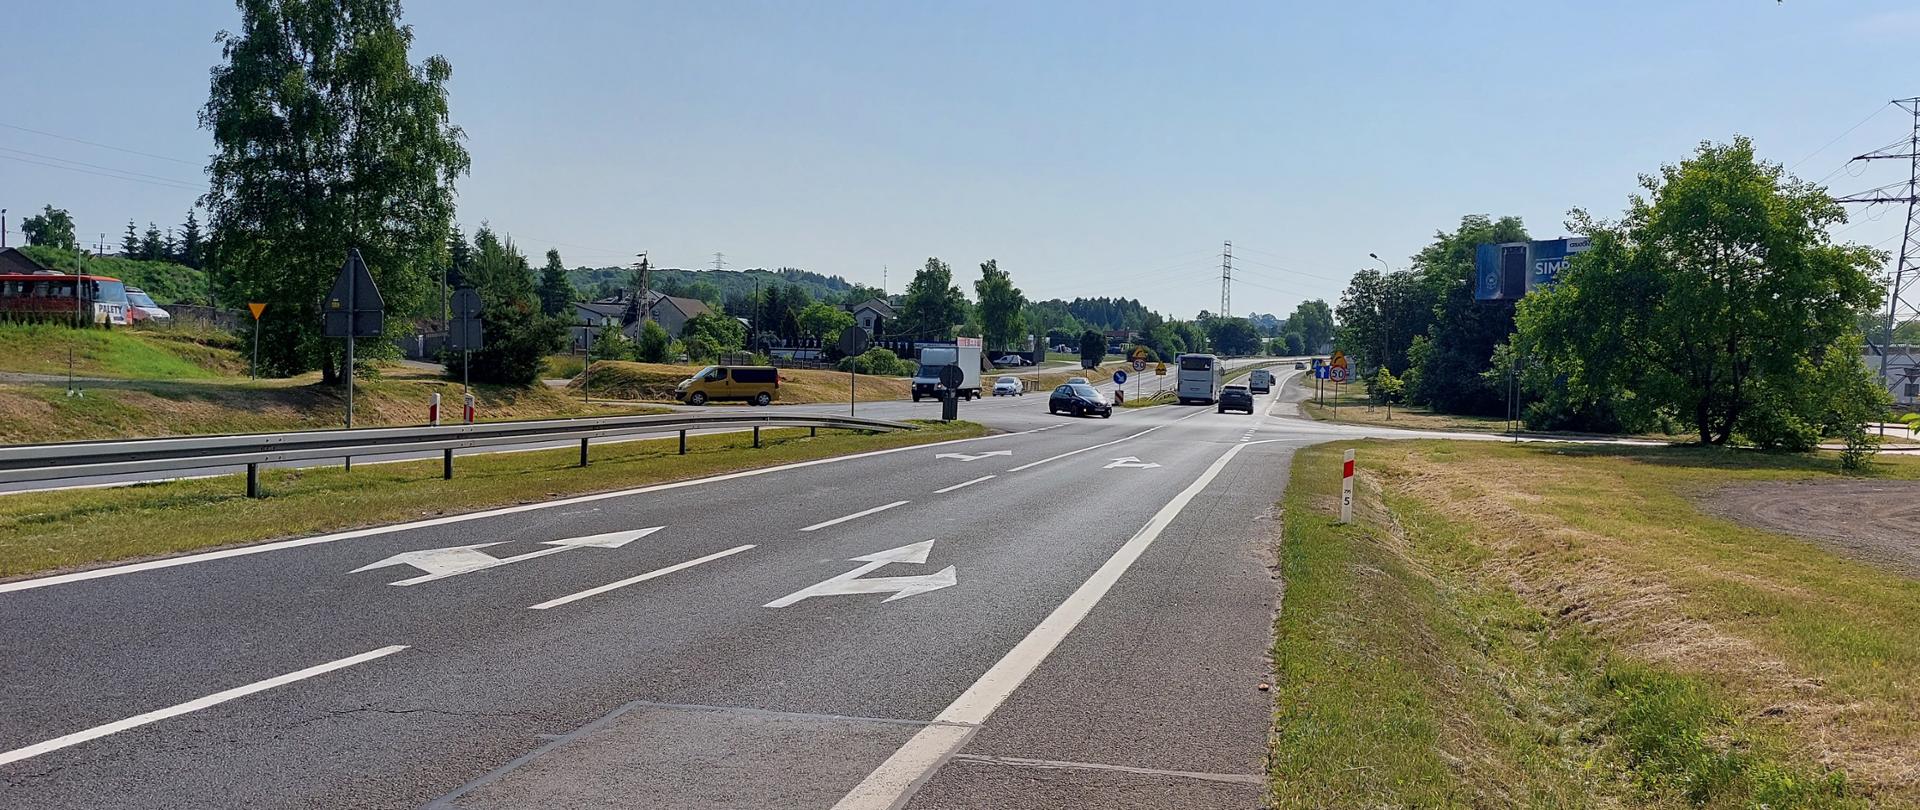 Zdjęcie drogi krajowej nr 94 w Olkuszu. Widoczne dwie jezdnie po dwa pasy ruchu w obu kierunkach z oznakowaniem poziomym i pionowym. Jezdnie oddzielone są pasem zieleni i barierami ochronnymi. 